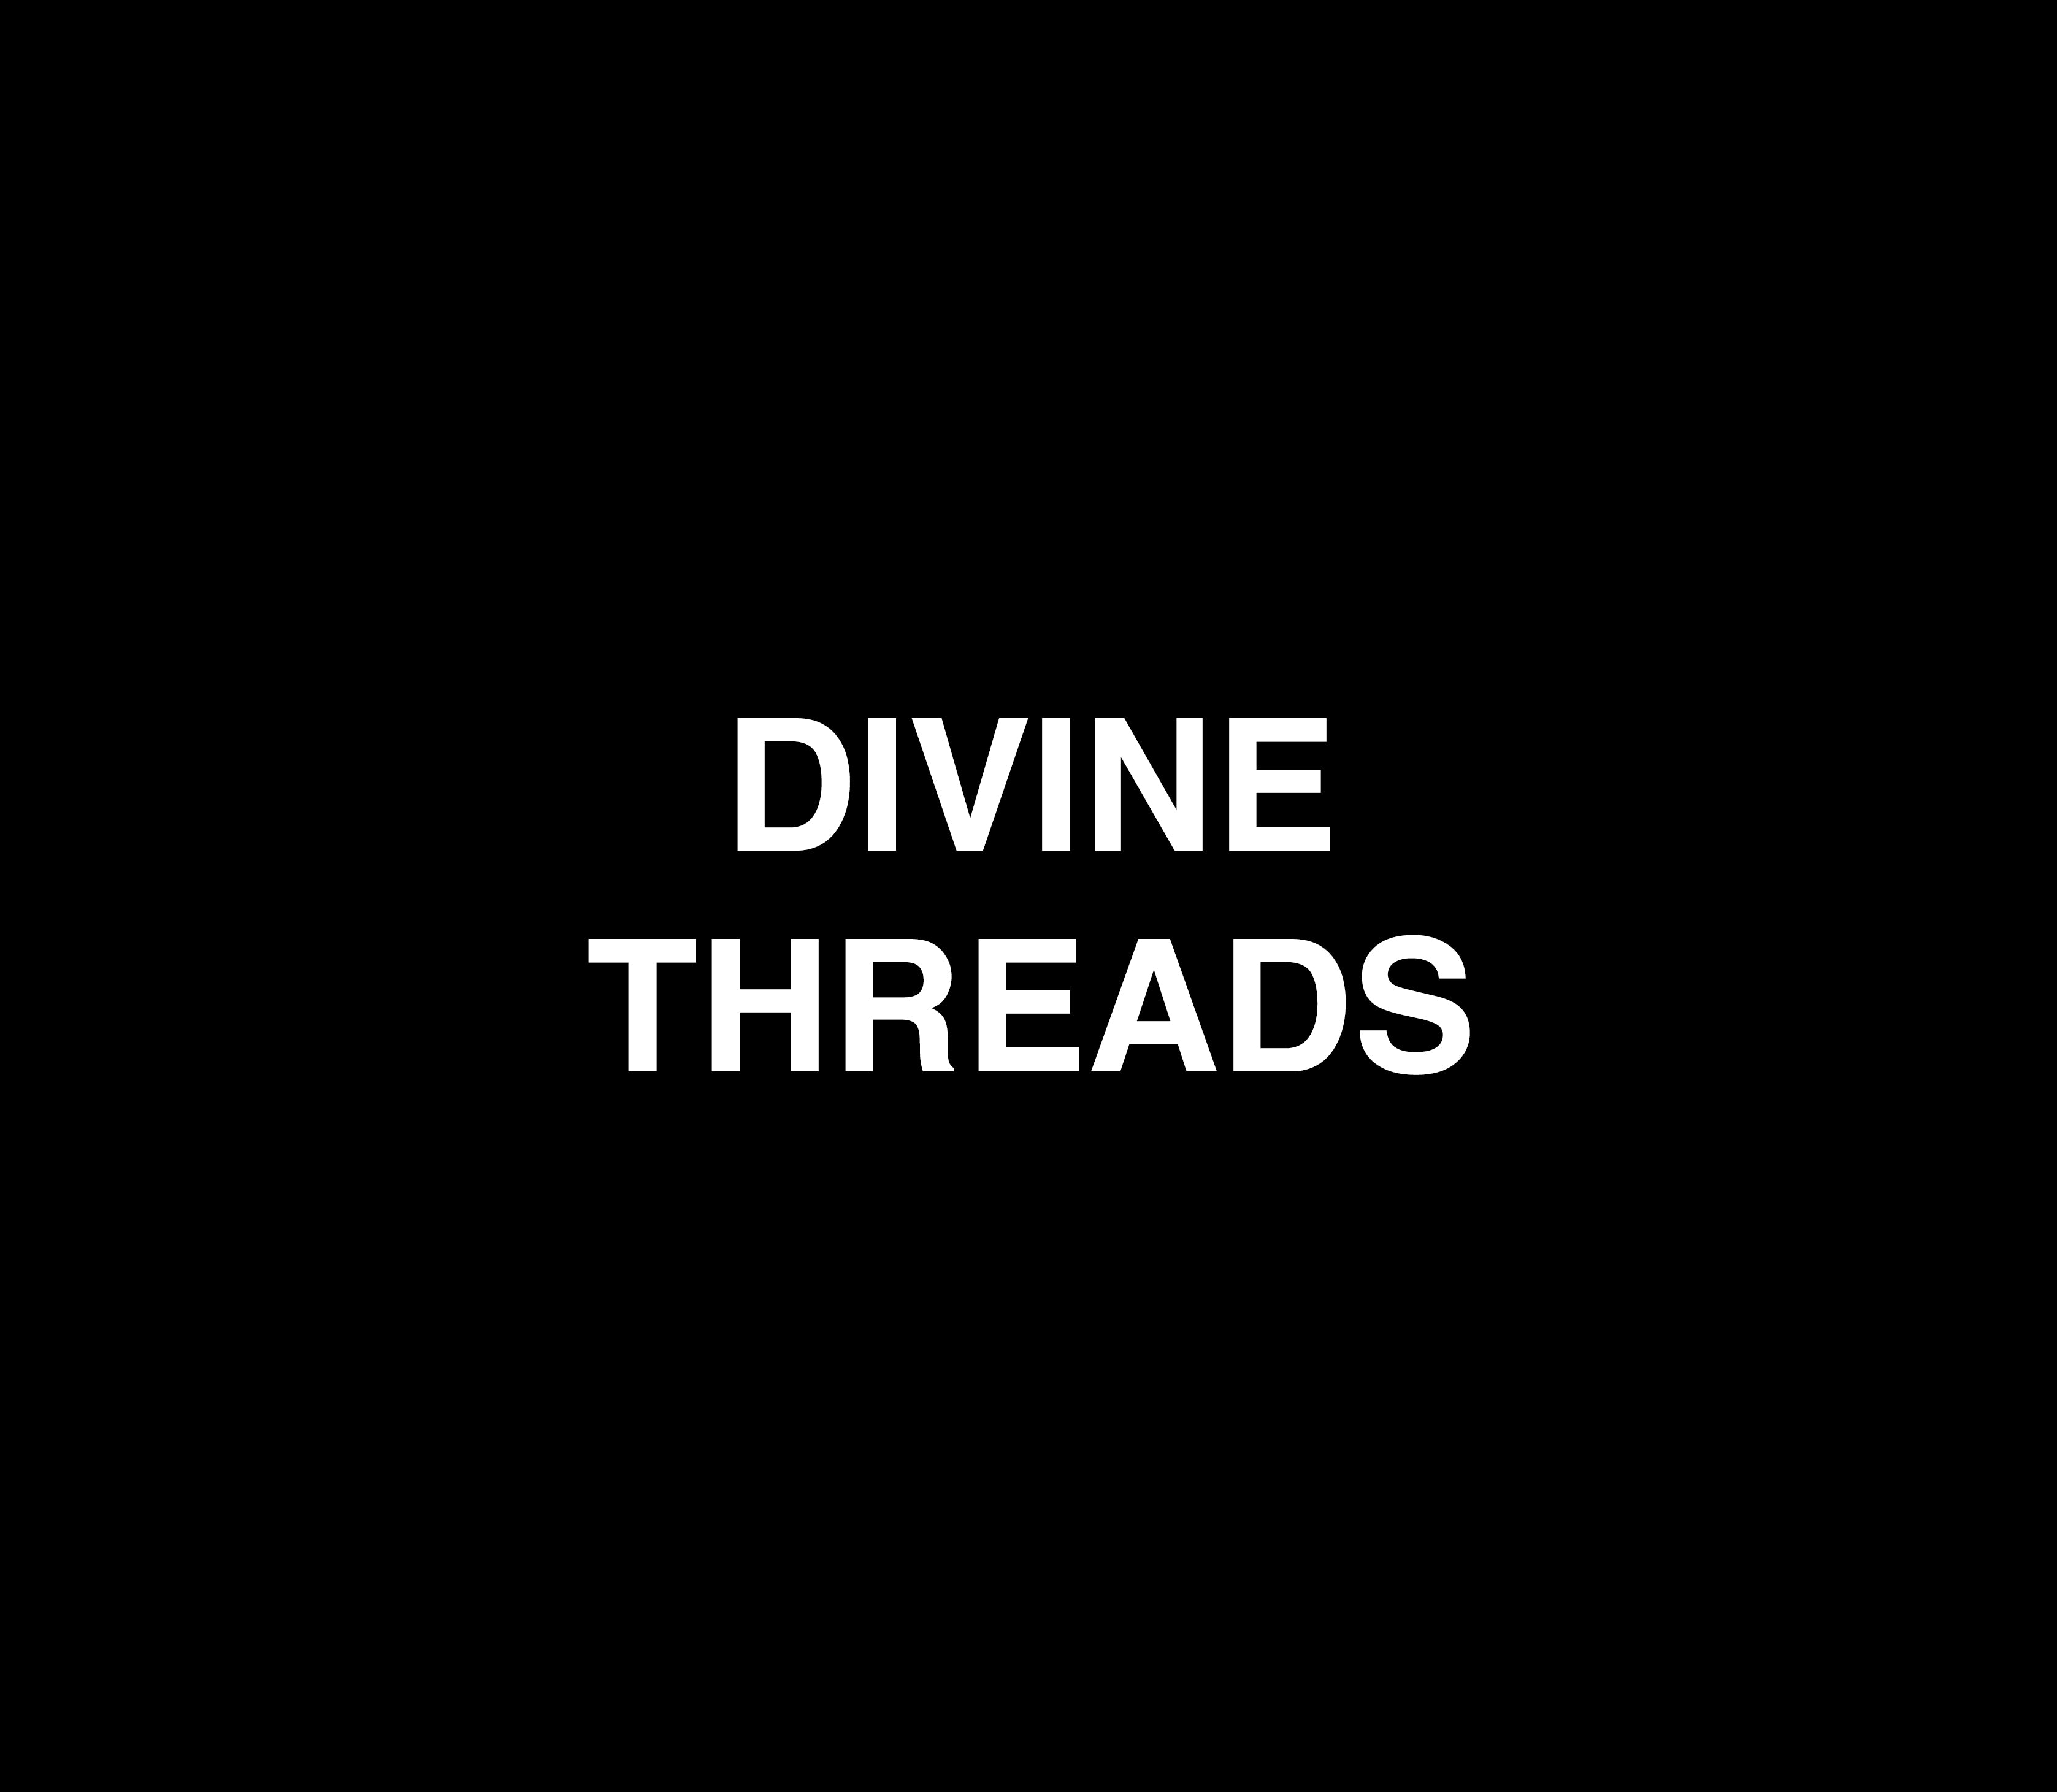 DIVINE THREADS